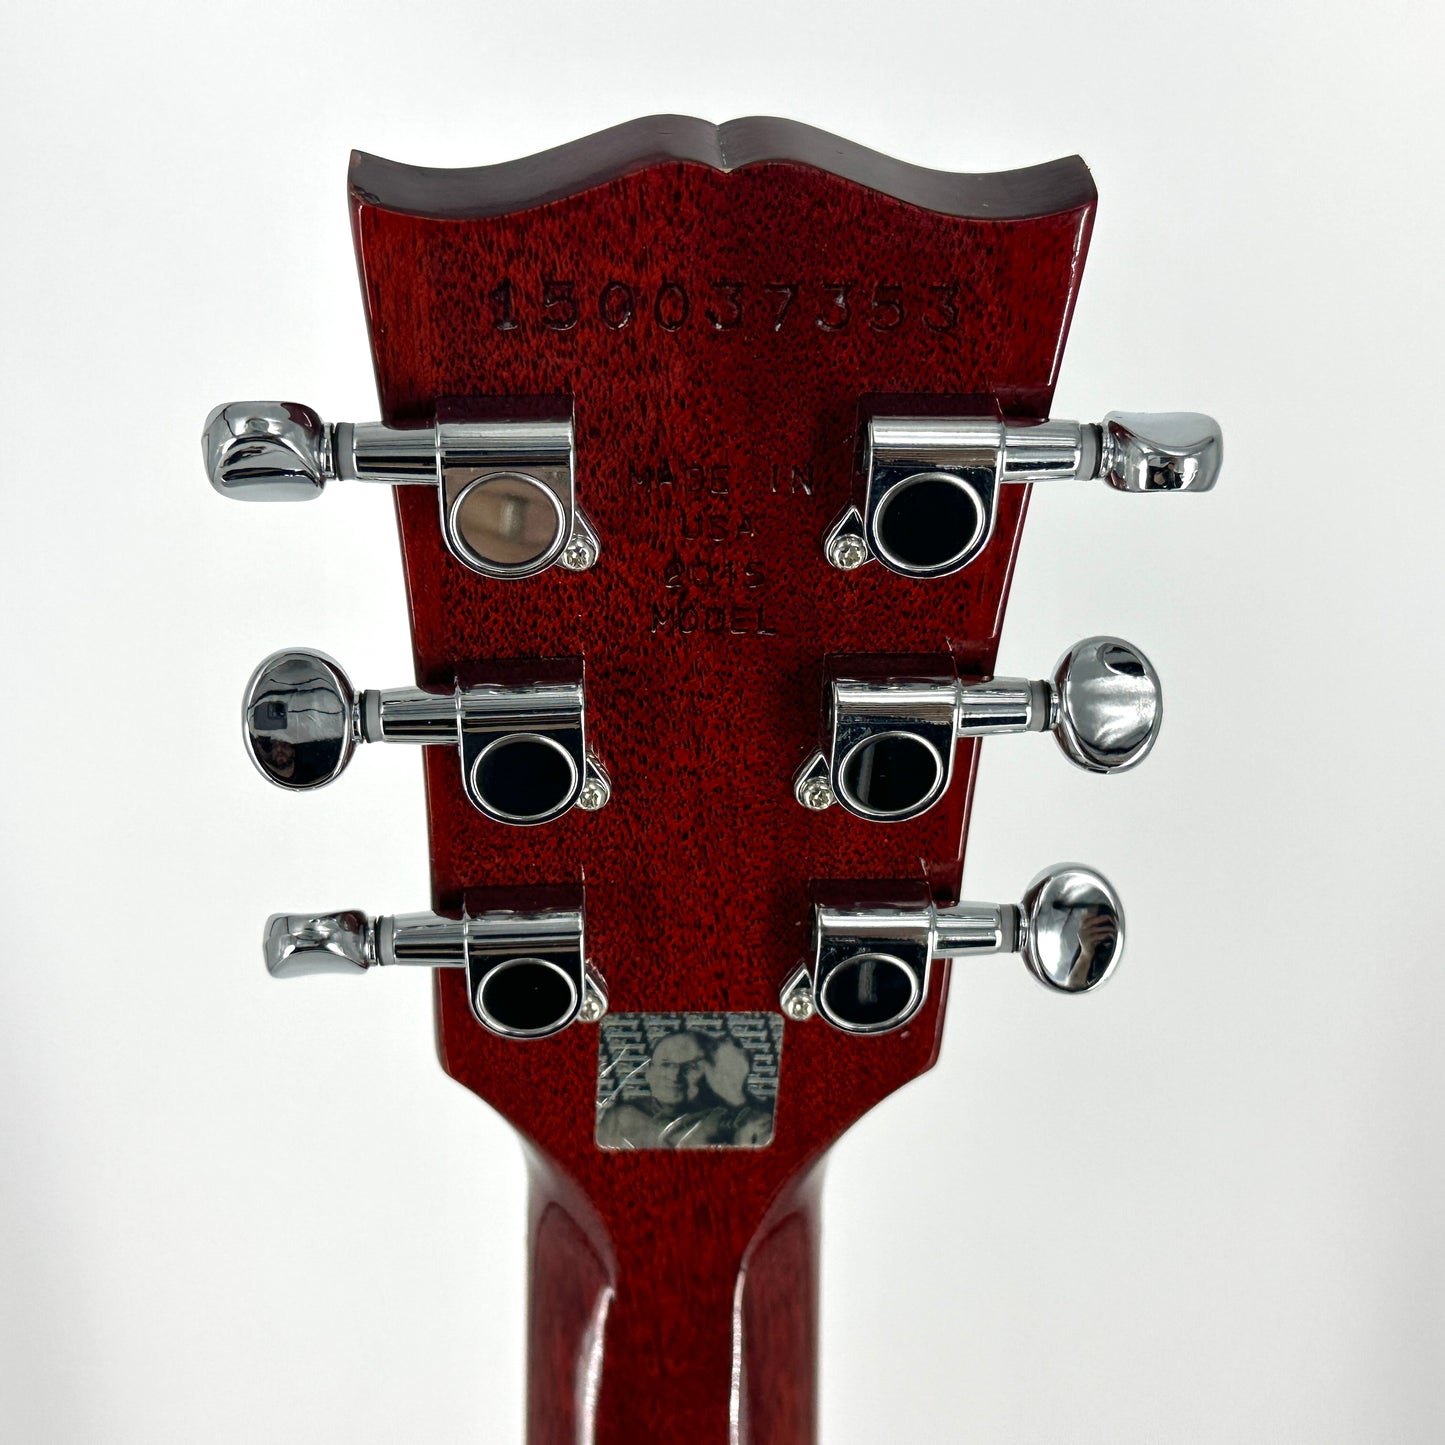 2015 Gibson Les Paul Less Plus – Cherry Sunburst